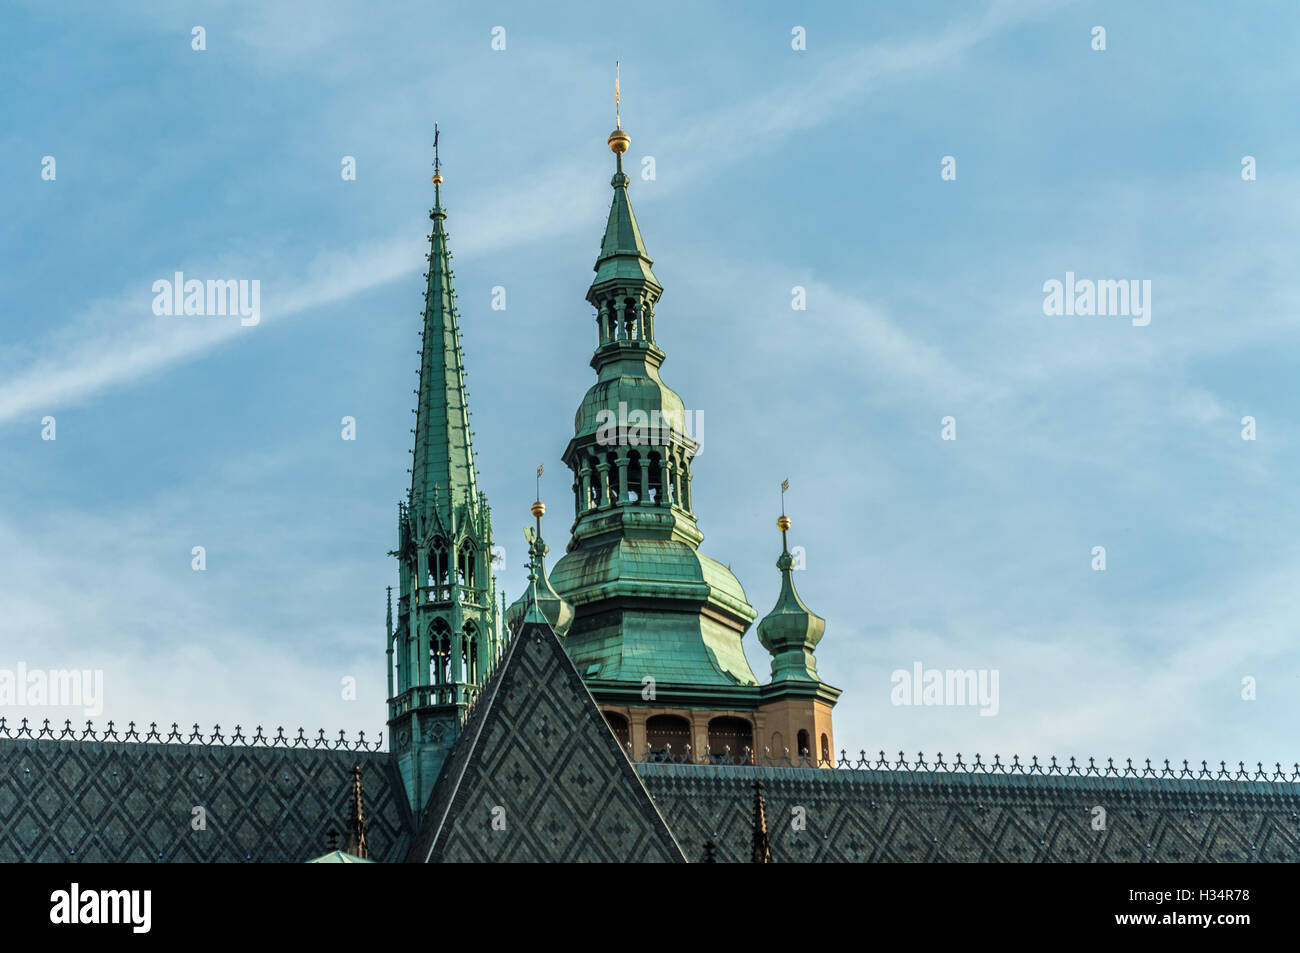 La Catedral de San Vito de Praga, el castillo gótico complejo: Pinnacle cerca del campanario barroco. Foto de stock